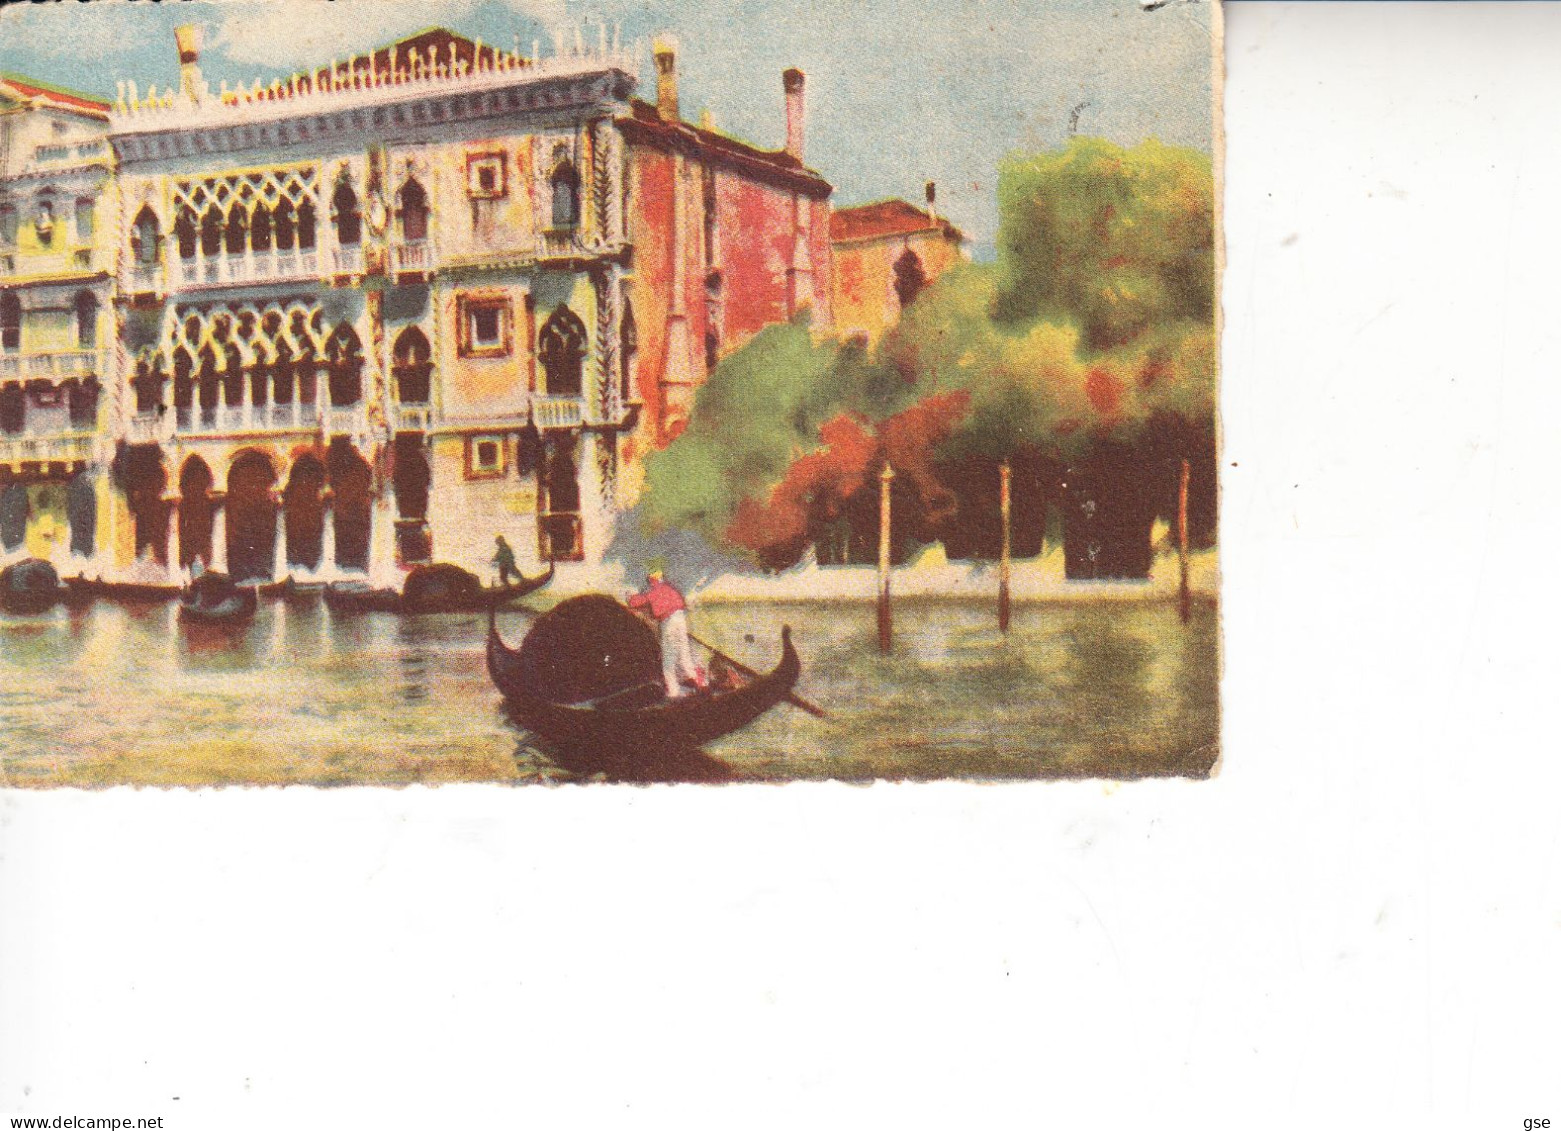 VENEZIA  1941 - Cartolina Per  Prov. Ancona (Mazzocca) - Venezia (Venice)